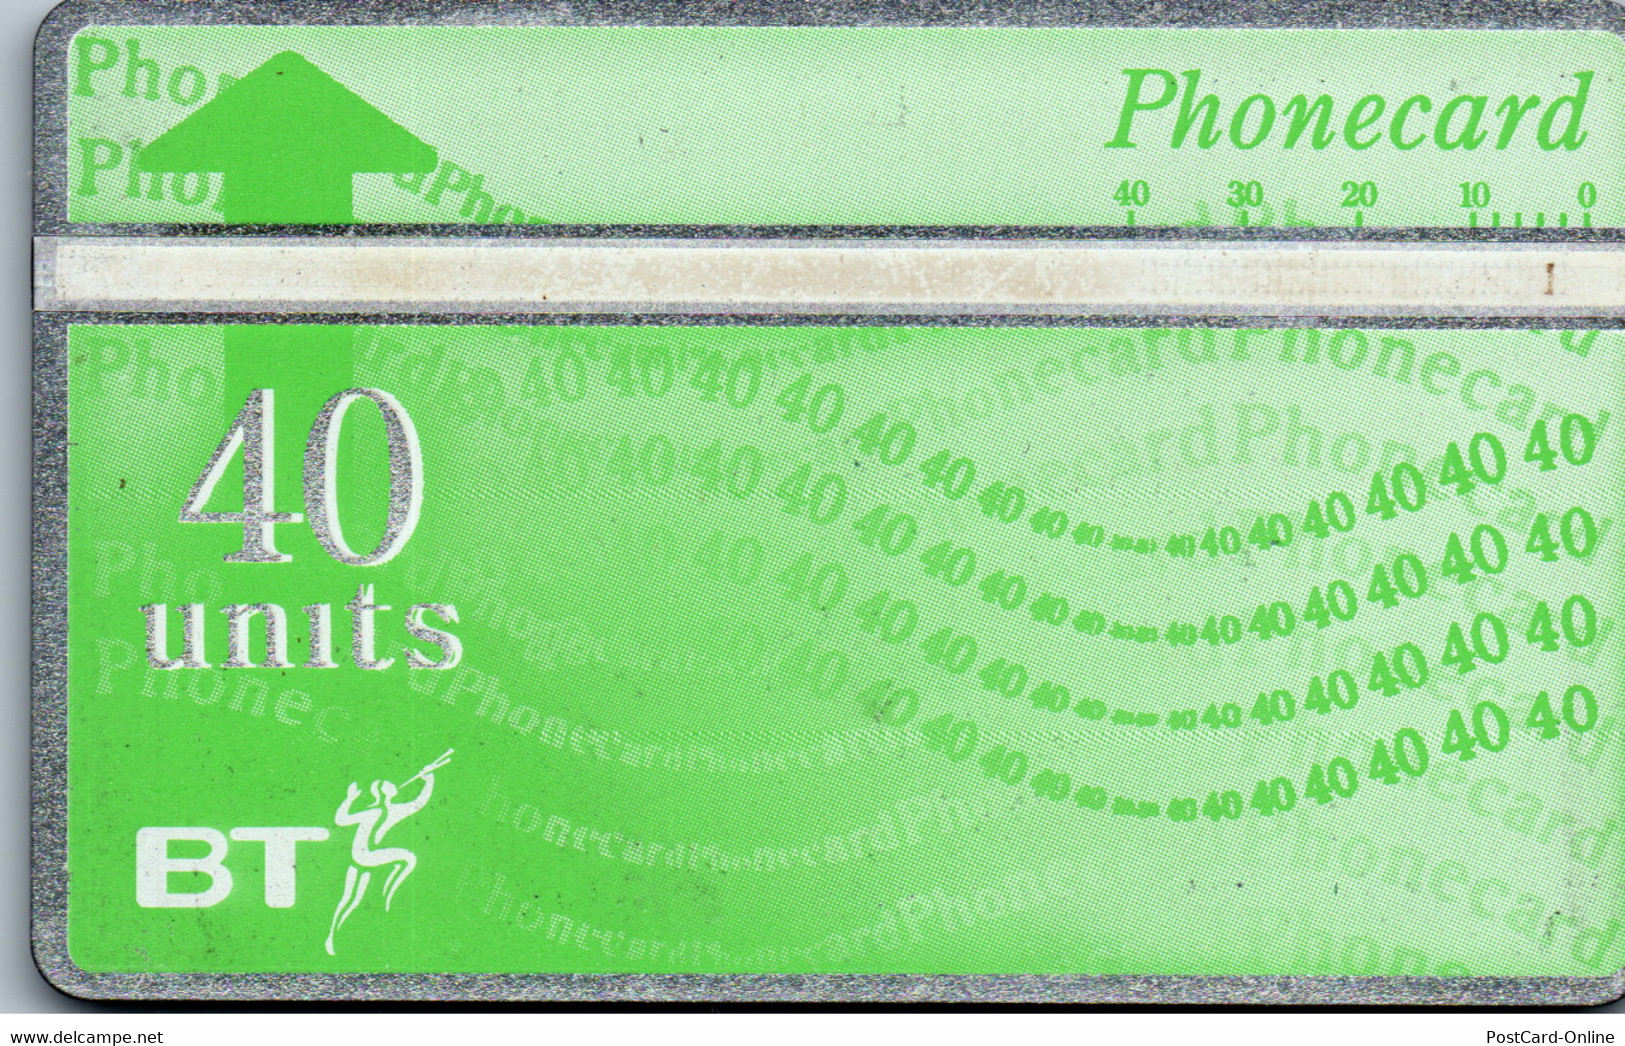 26495 - Großbritannien - BT , Phonecard - BT Edición General